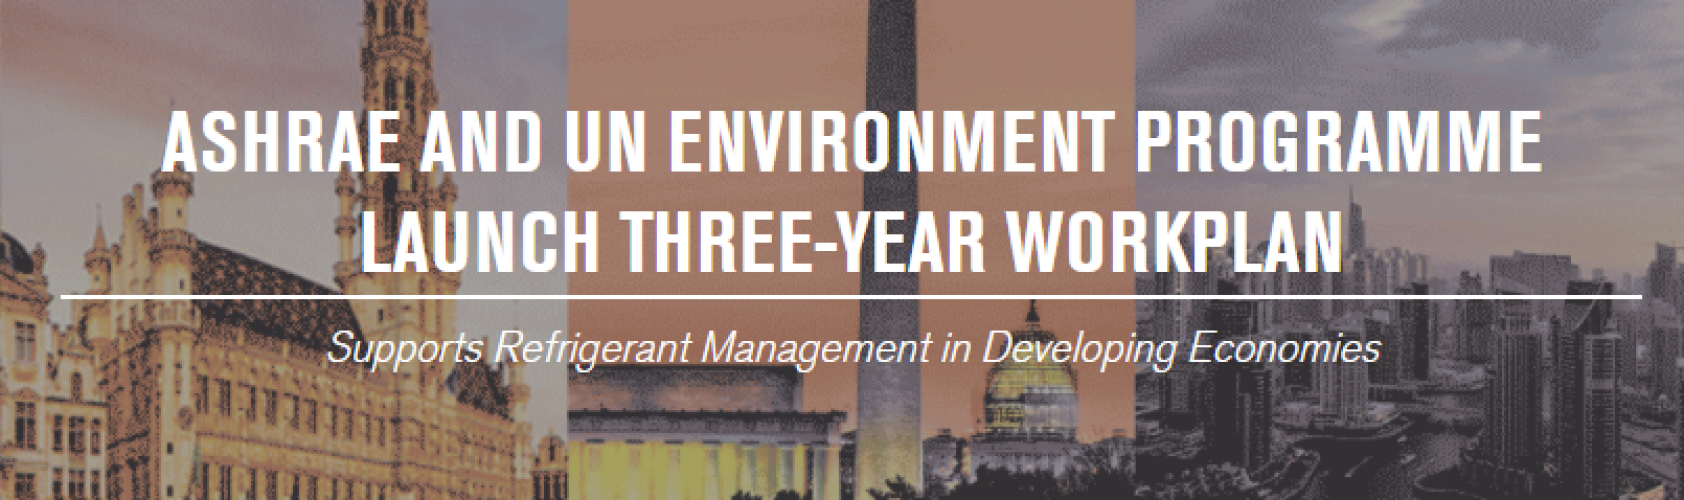 ASHRAE y el Programa de las Naciones Unidas para el Medio Ambiente lanzan plan de trabajo de tres años